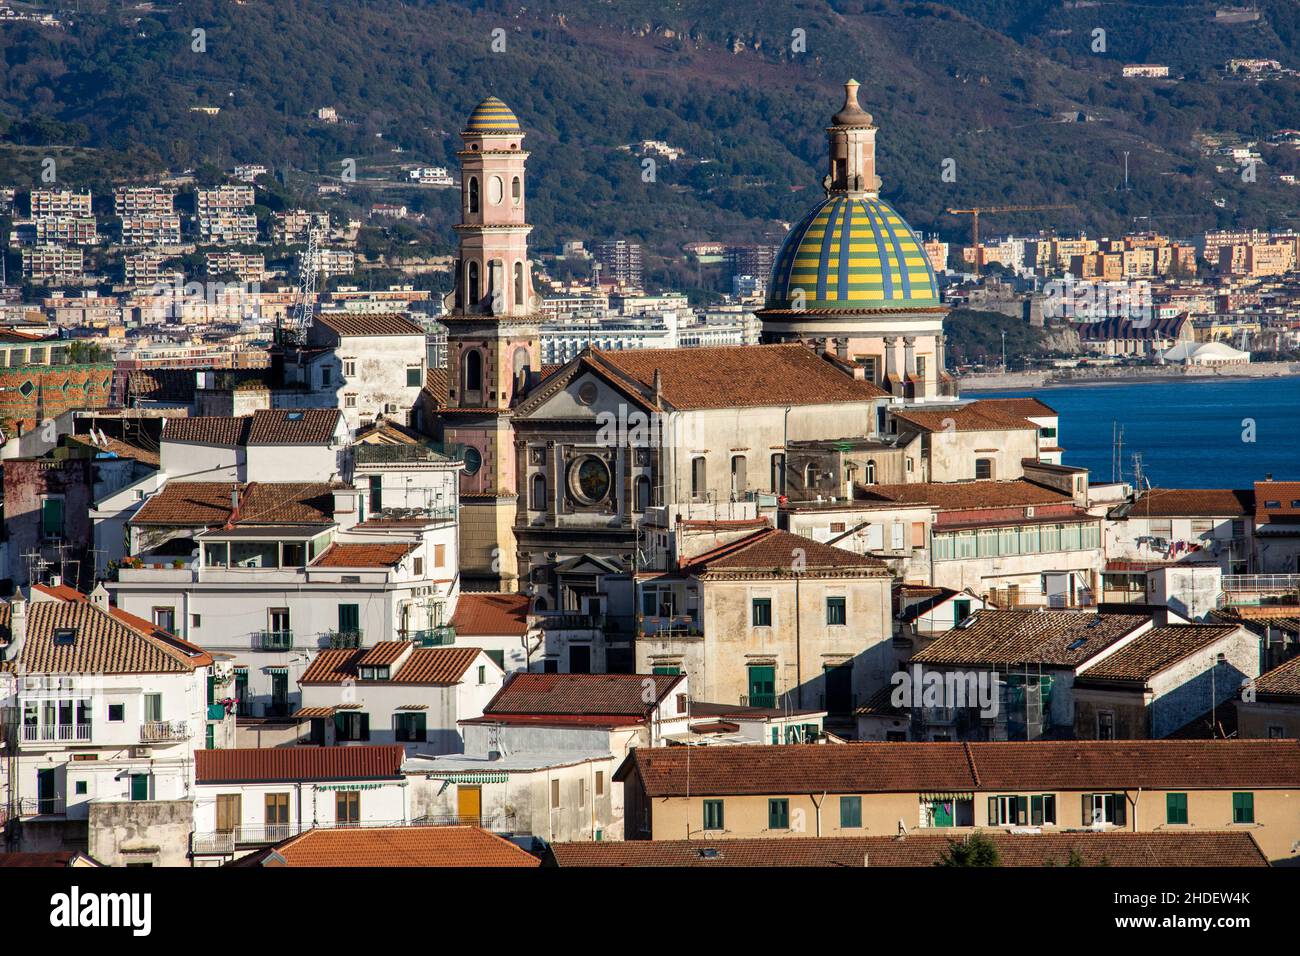 Chiesa Parrocchiale di S.Giovanni Battista, Vietri sul Mare, Amalfi Coast, Italy Stock Photo